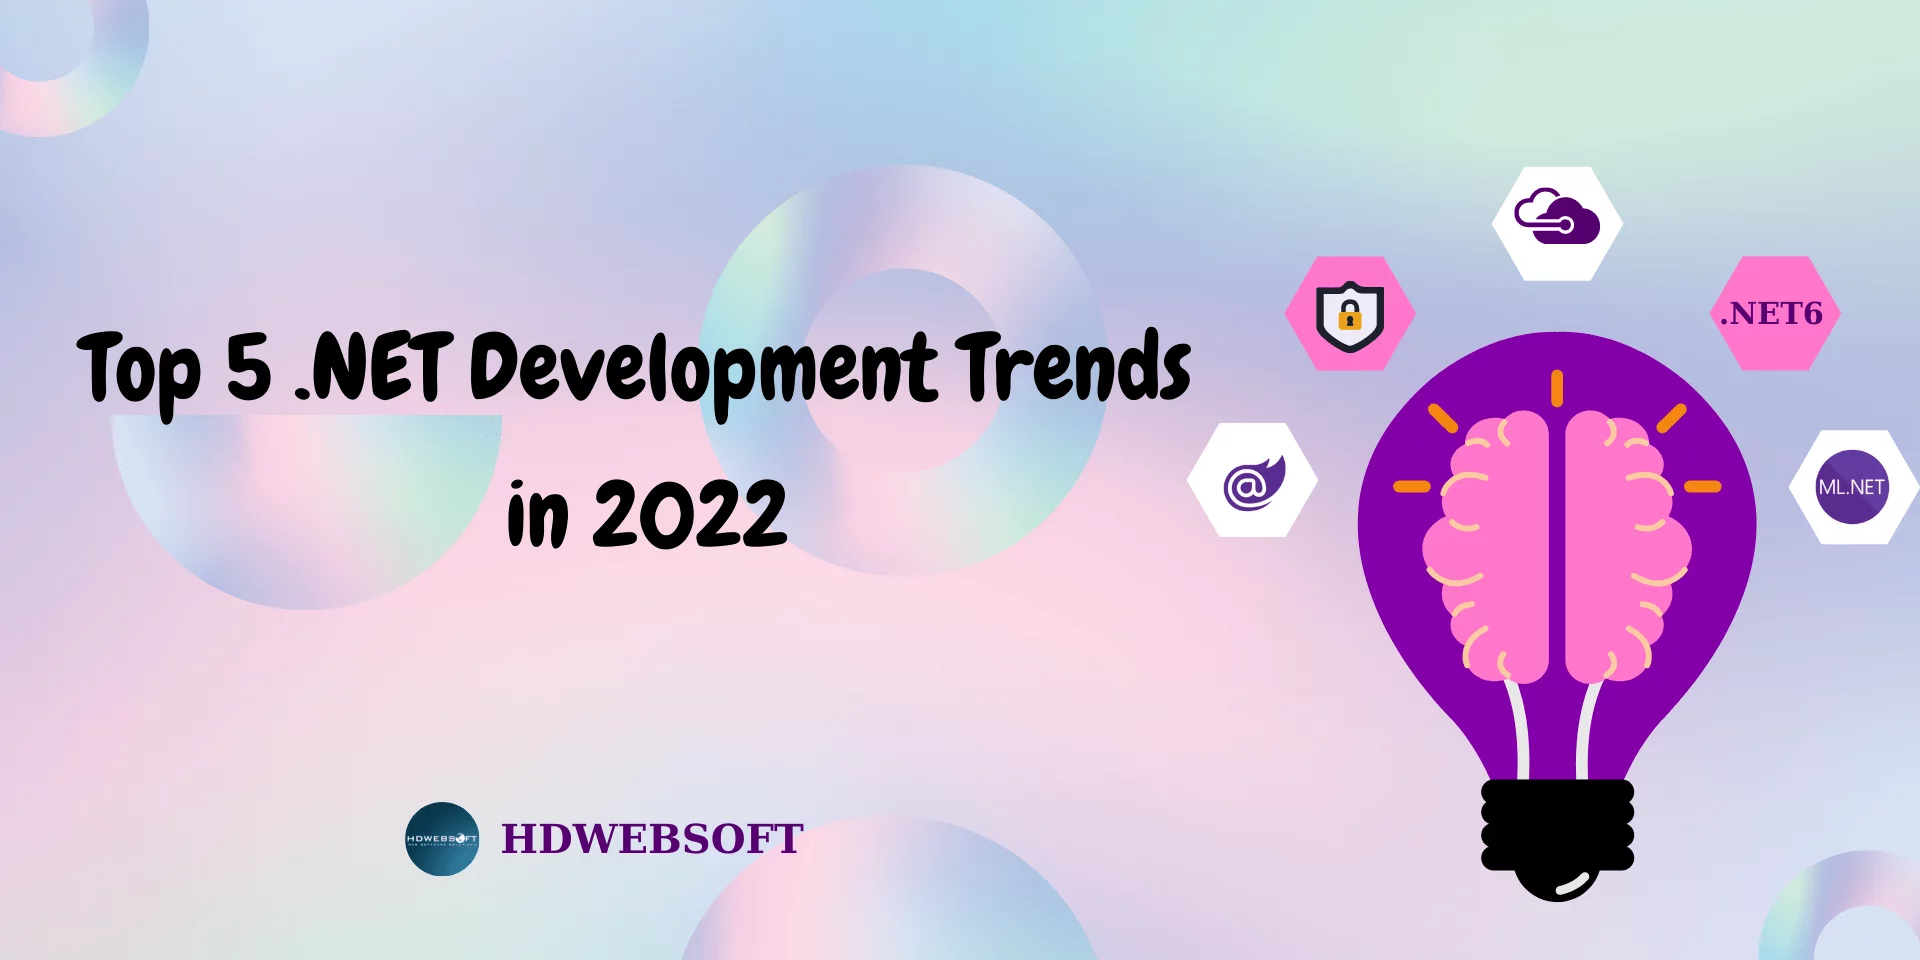 Top 5 .NET Development Trends in 2022